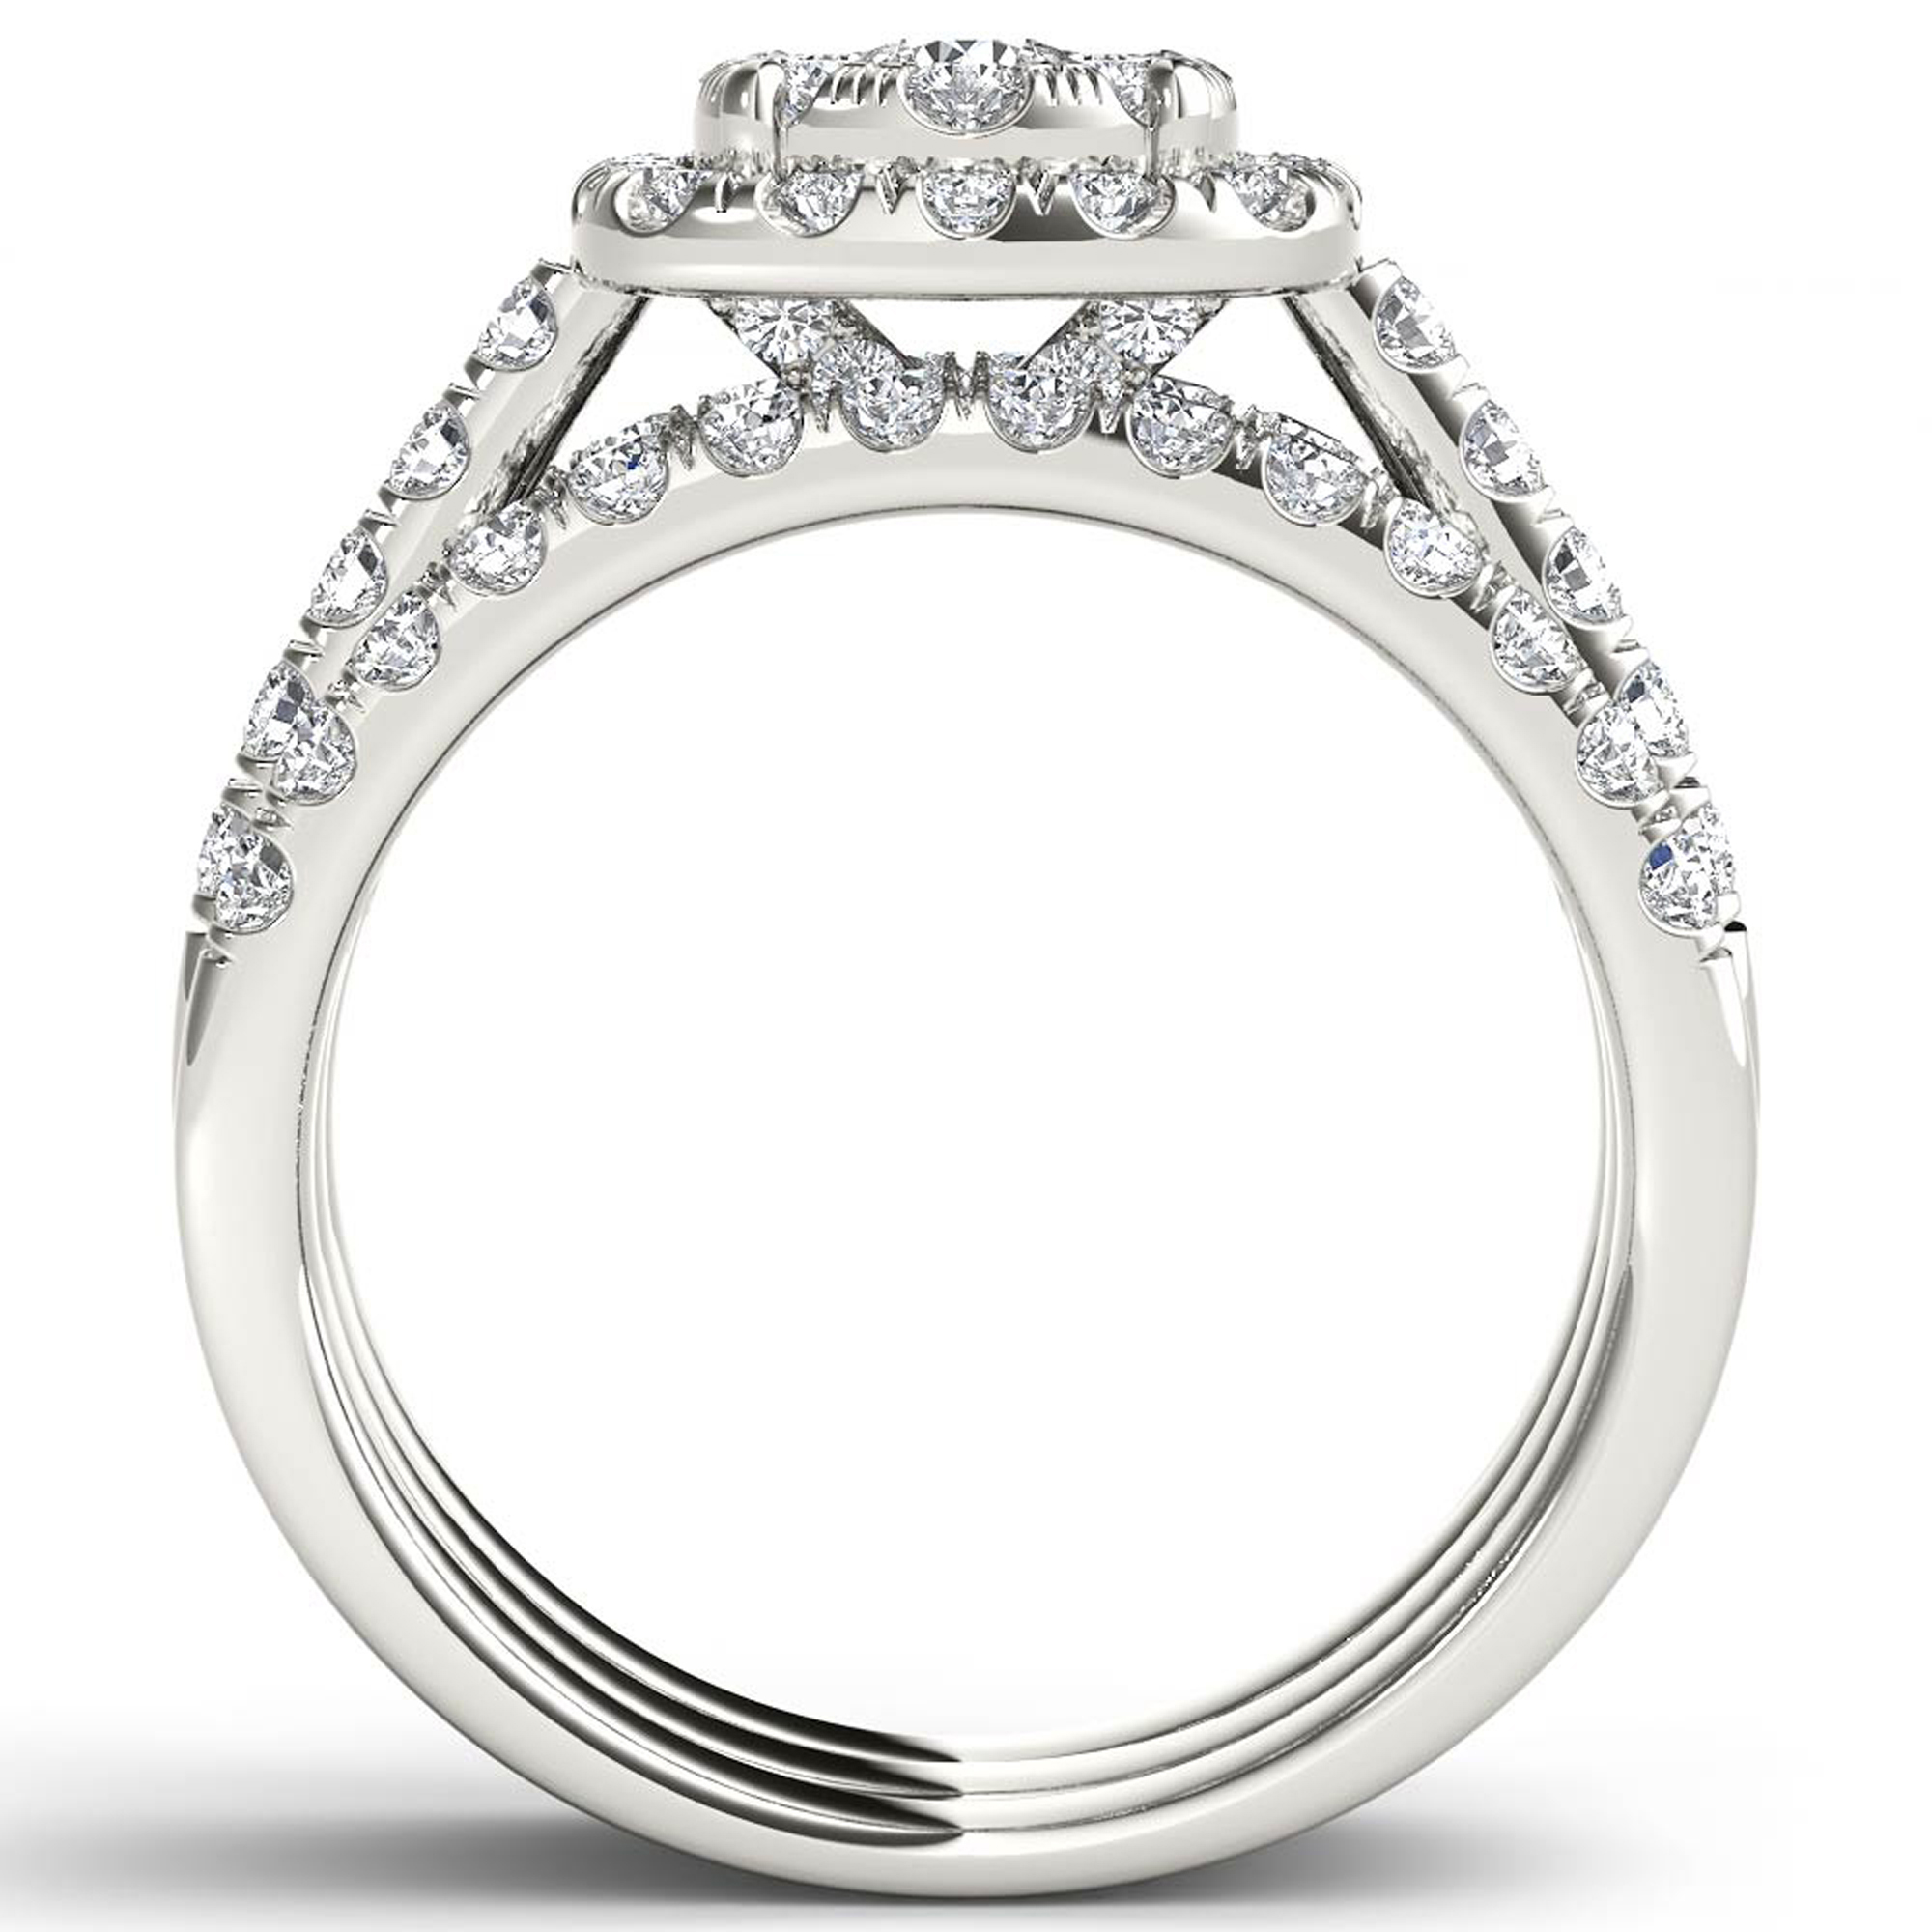 Amouria 14k White Gold 1 1/2 Ct TDW Round Cut Diamond Two Bands Halo Engagement Ring Set (HI, I2)